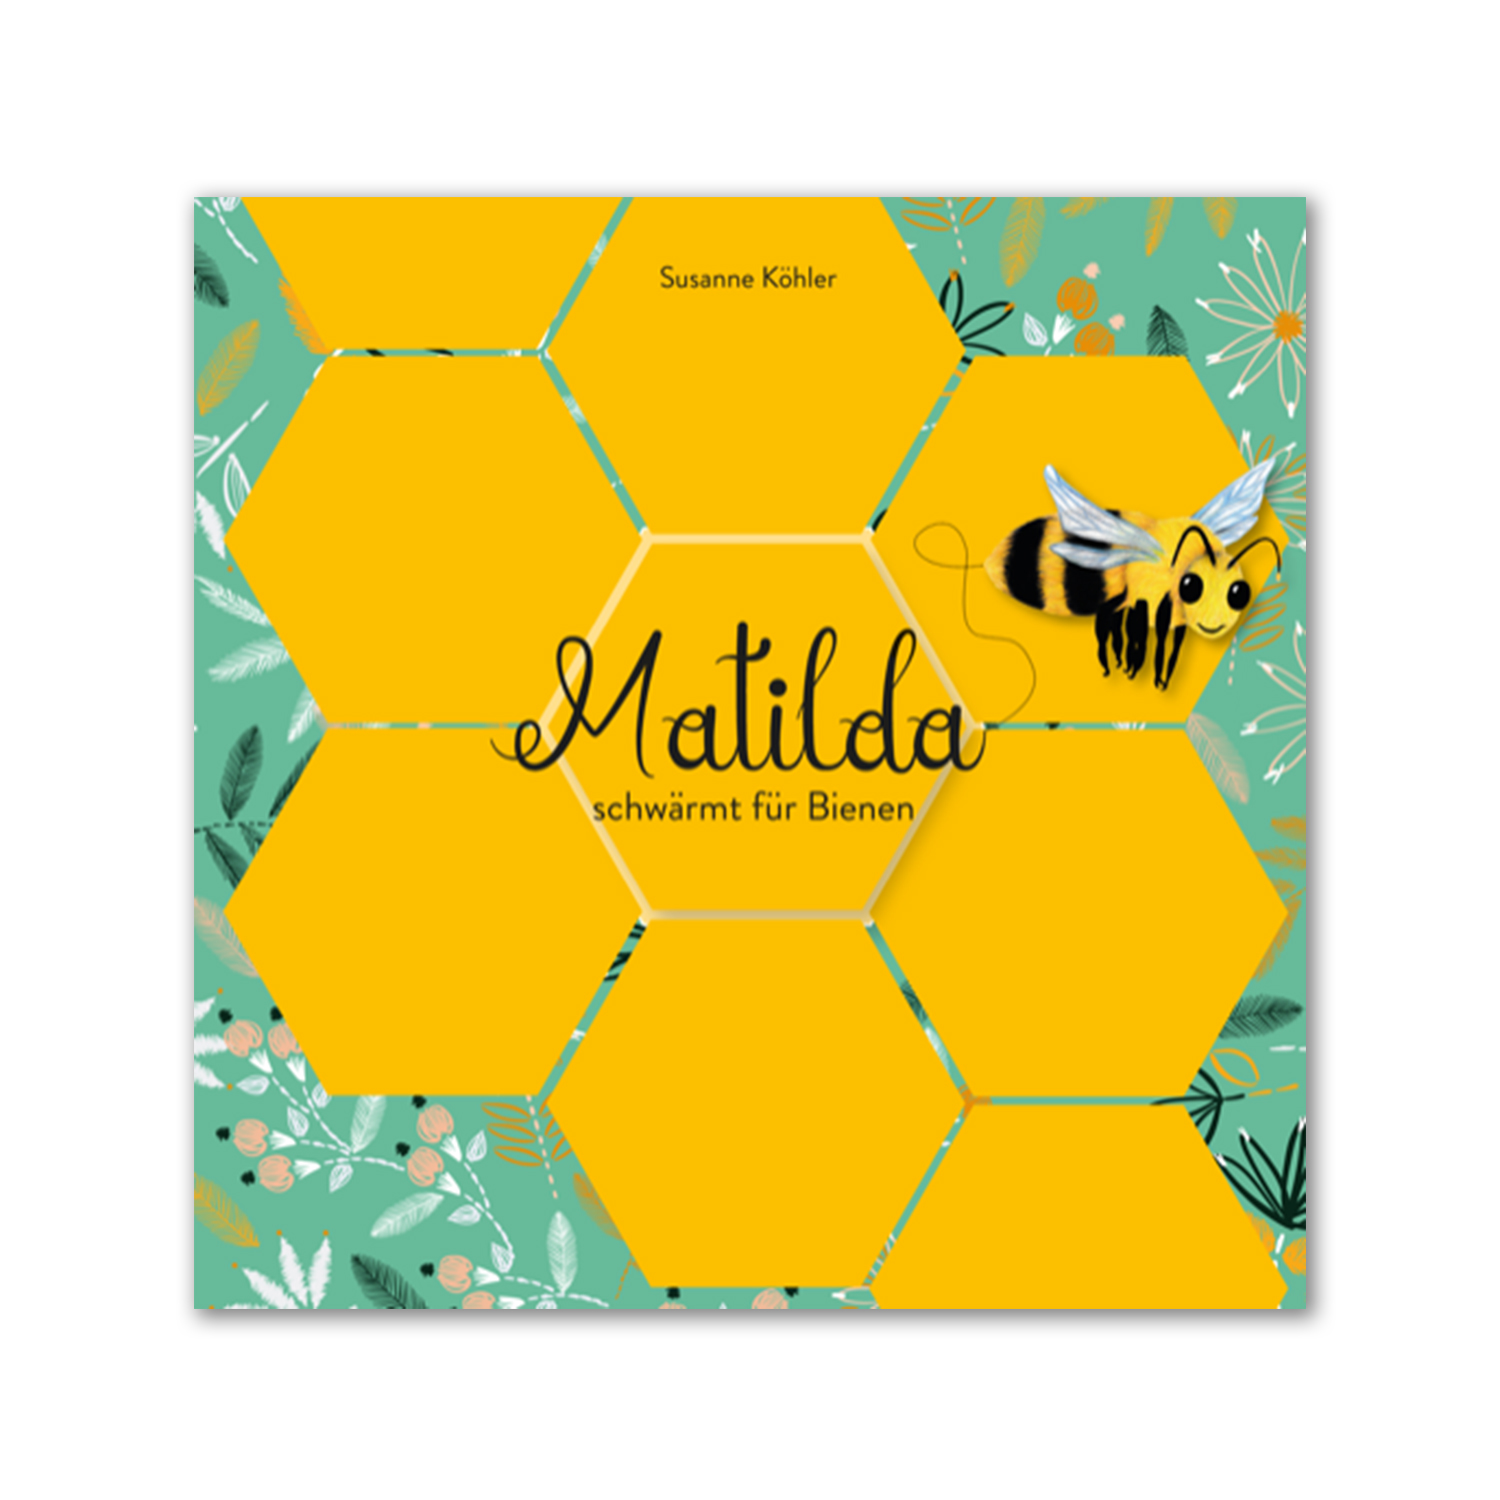 Matilda schwärmt für Bienen (Susanne Köhler)